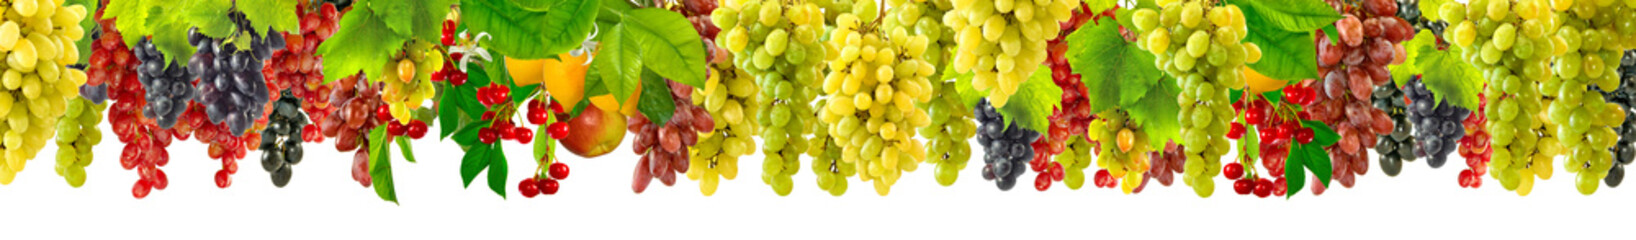 many grapes